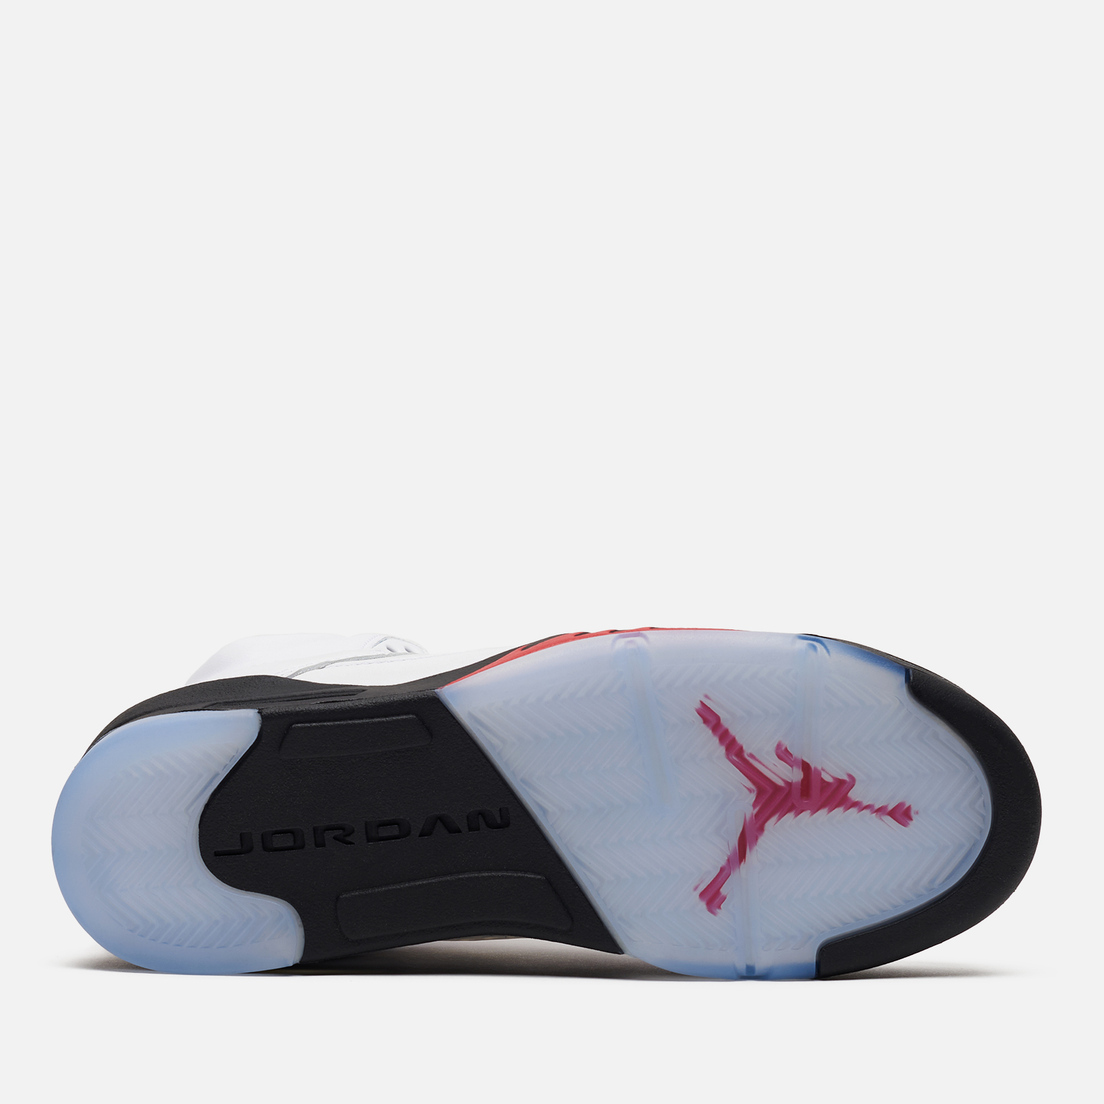 Jordan Подростковые кроссовки Air Jordan 5 Retro GS